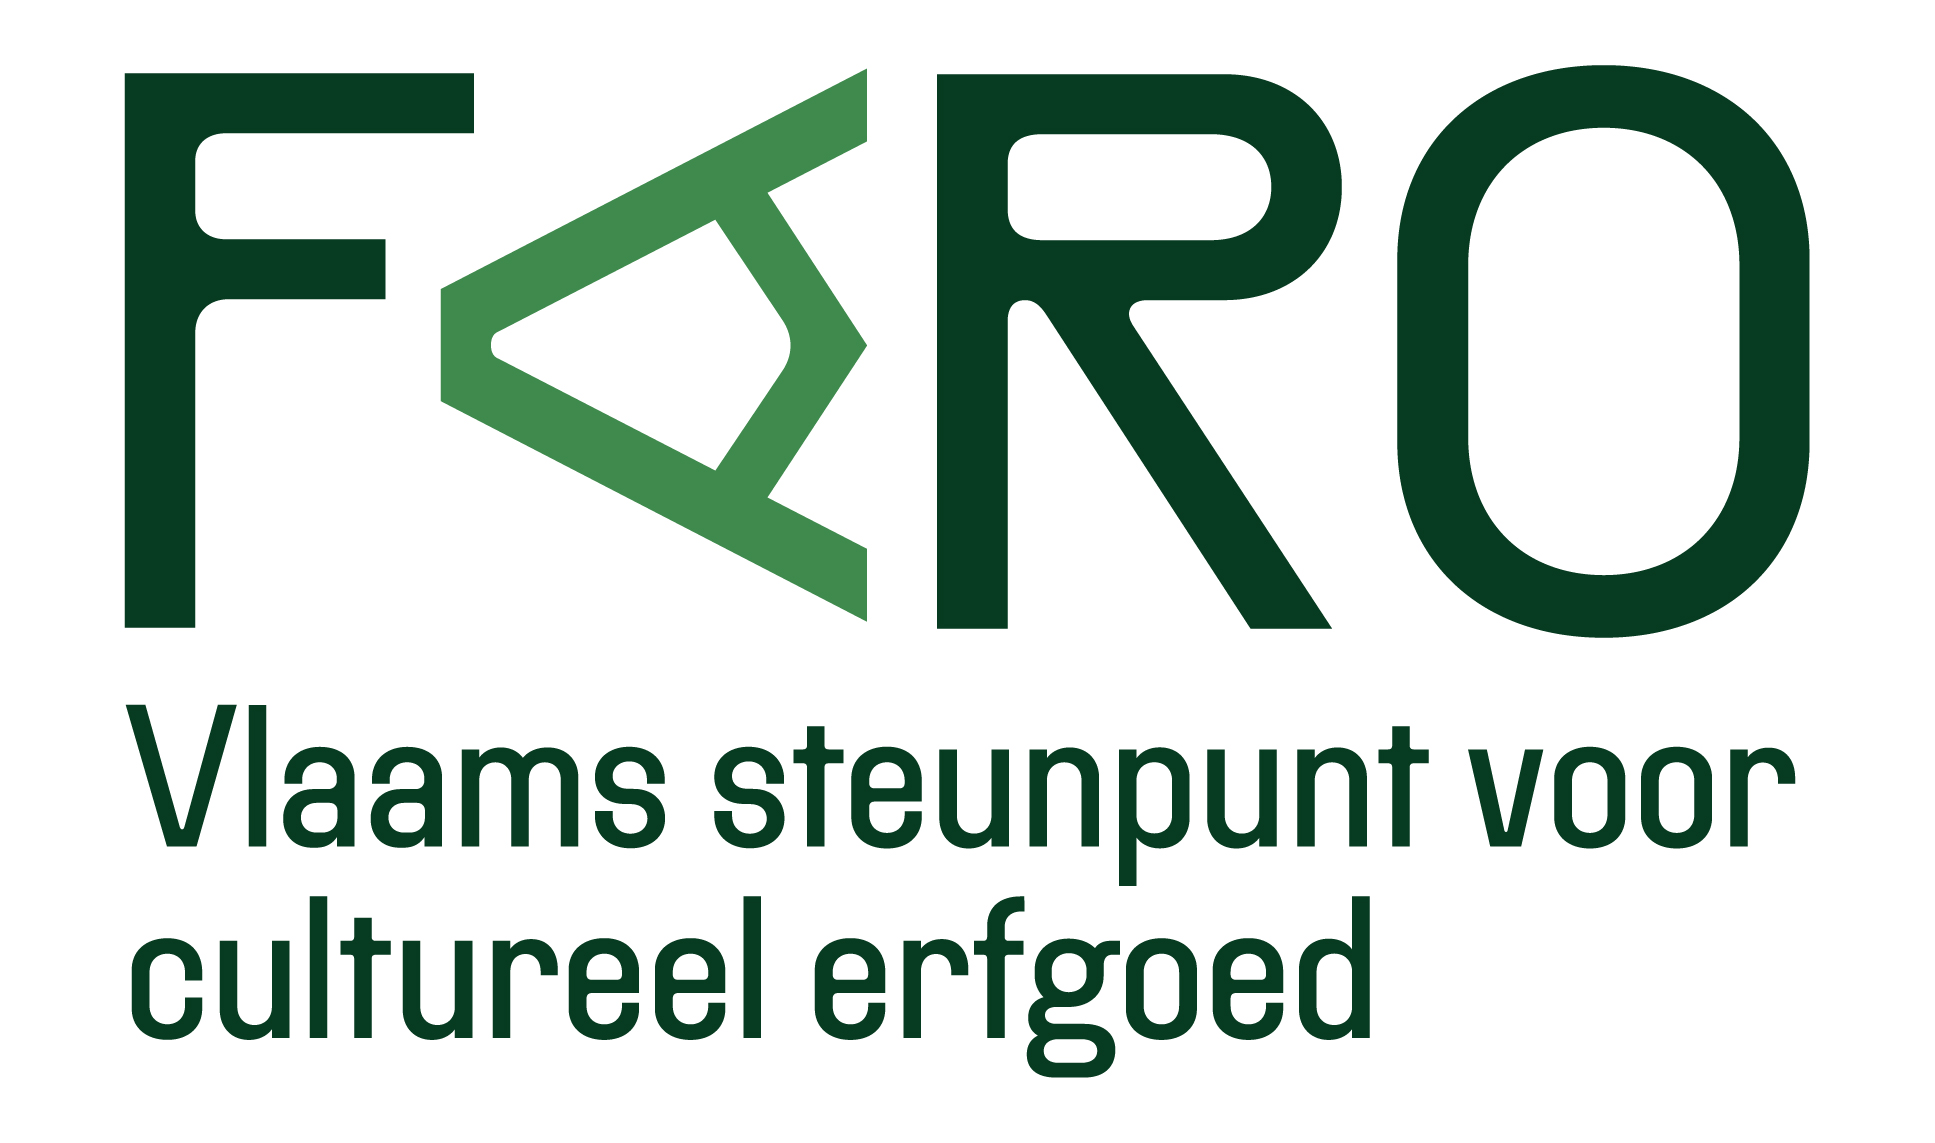 Faro logo